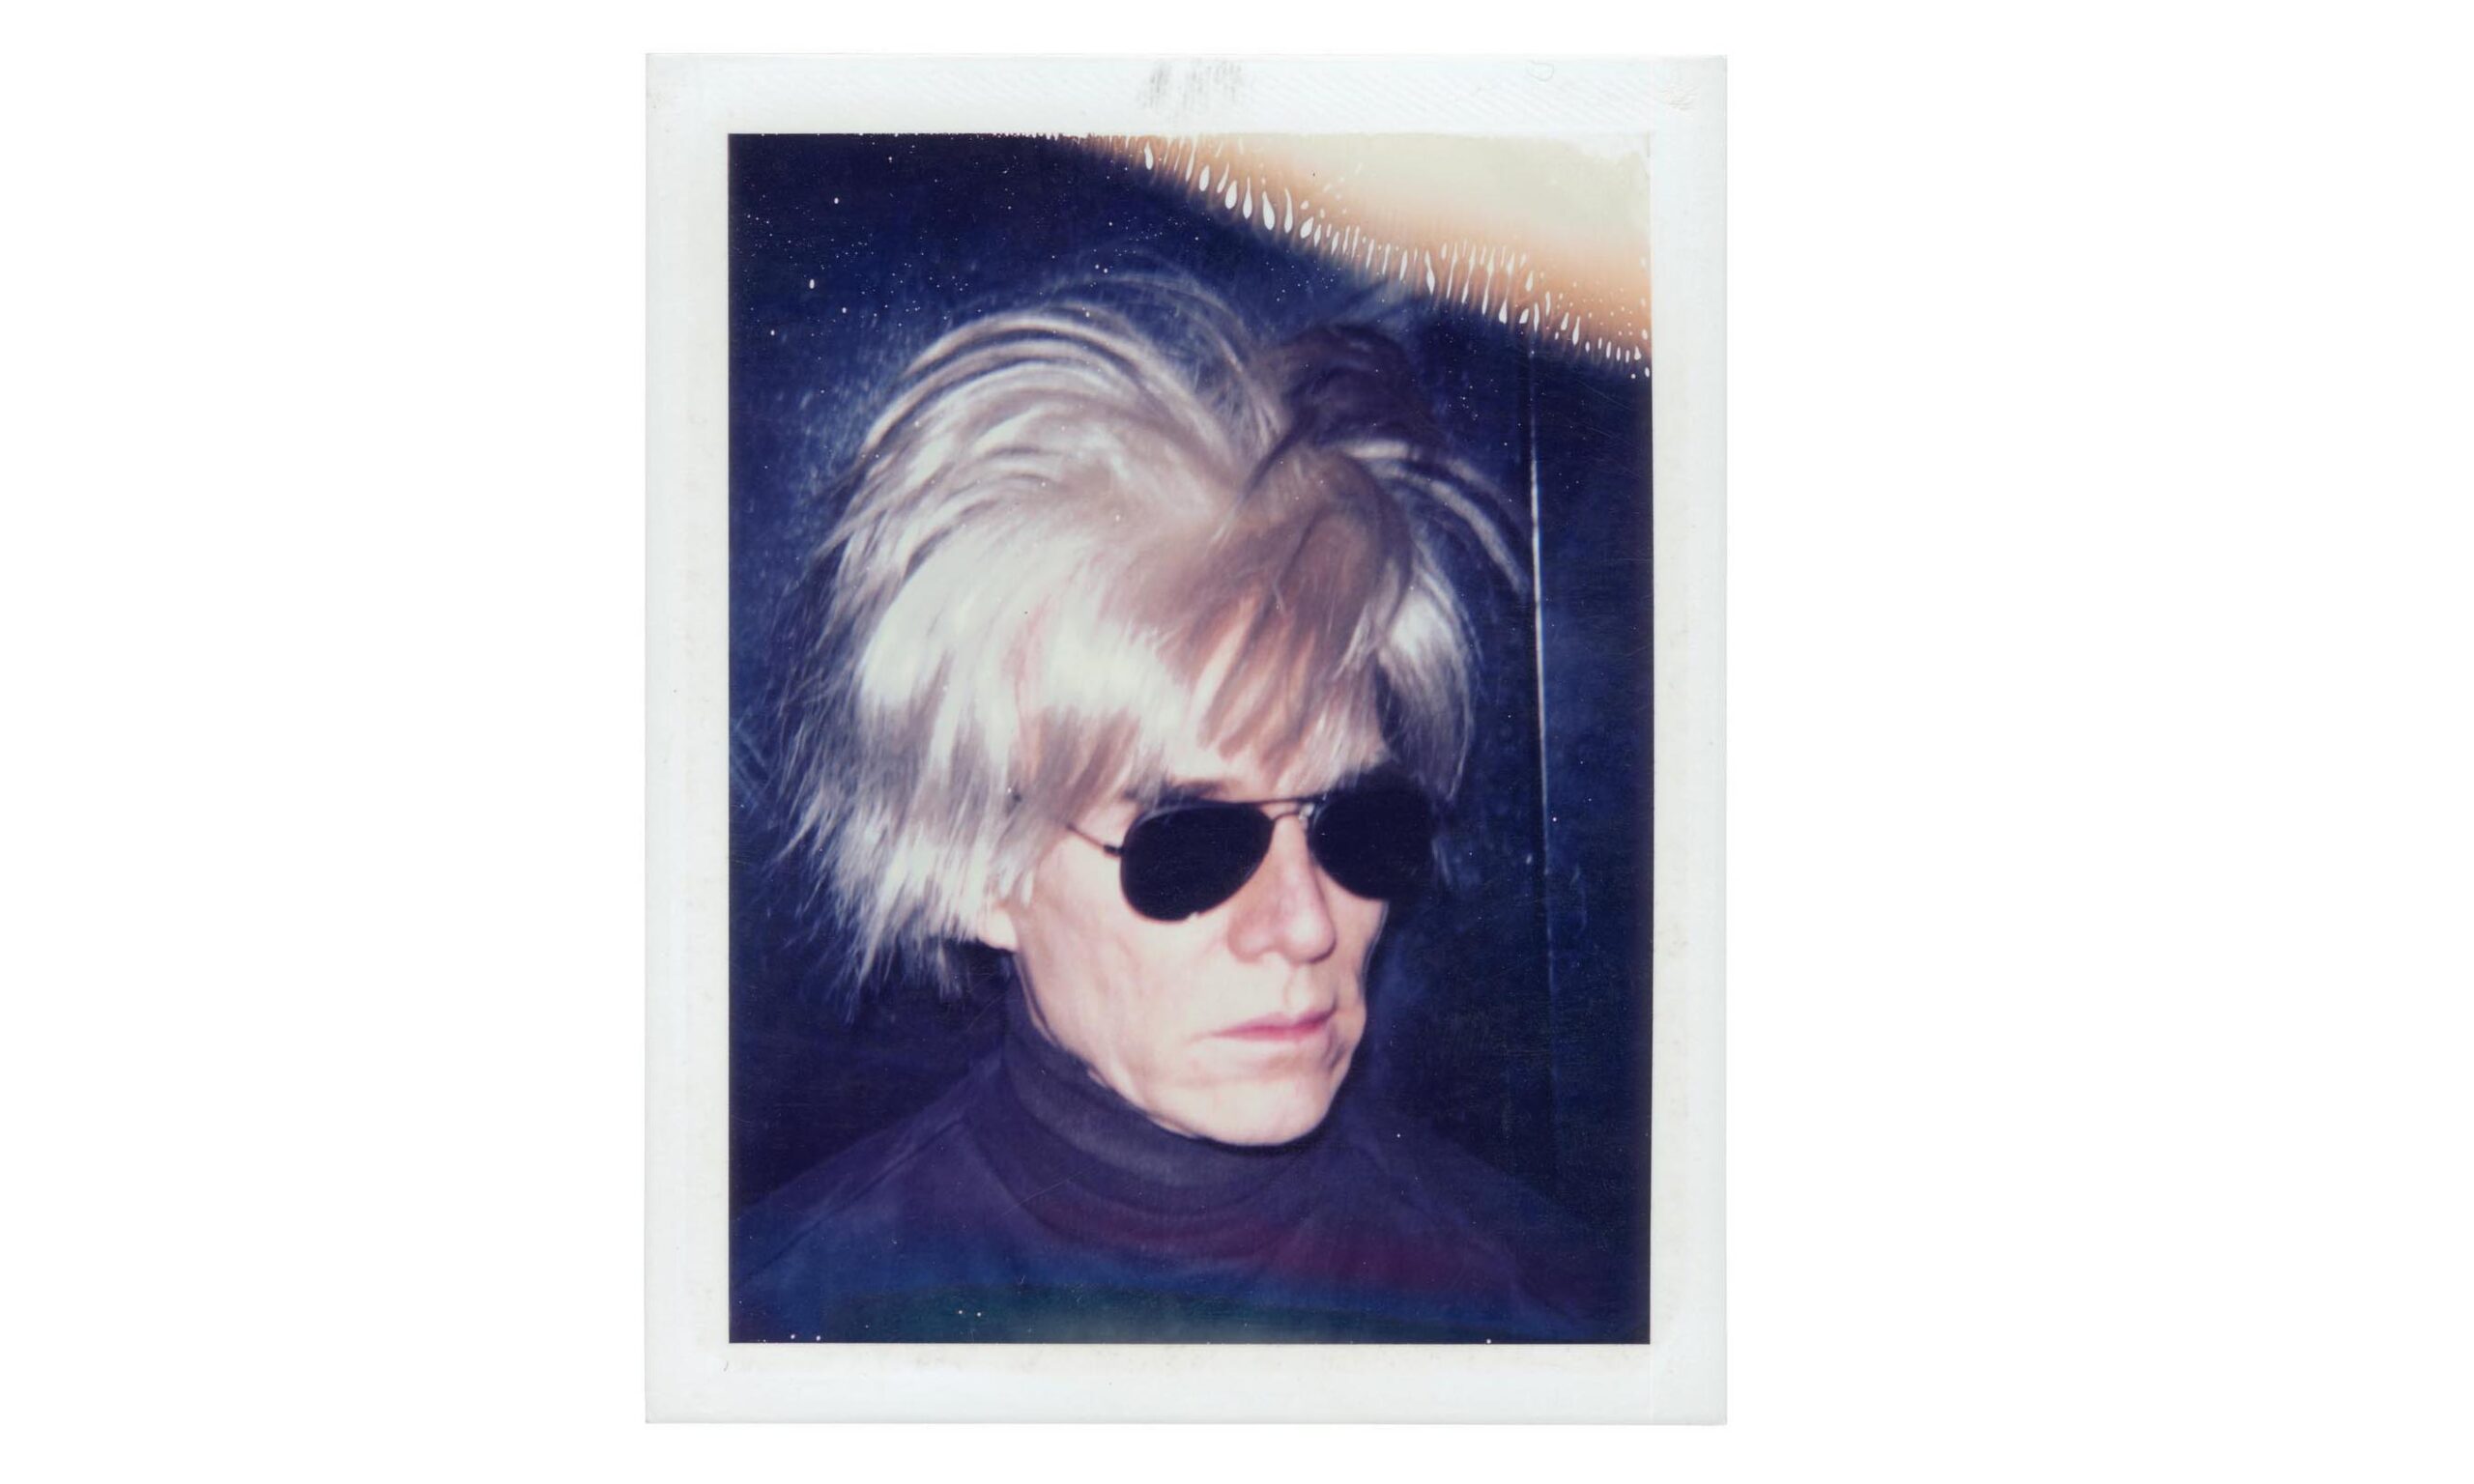 佳士得拍卖 Andy Warhol 生命最后十年创作的艺术作品